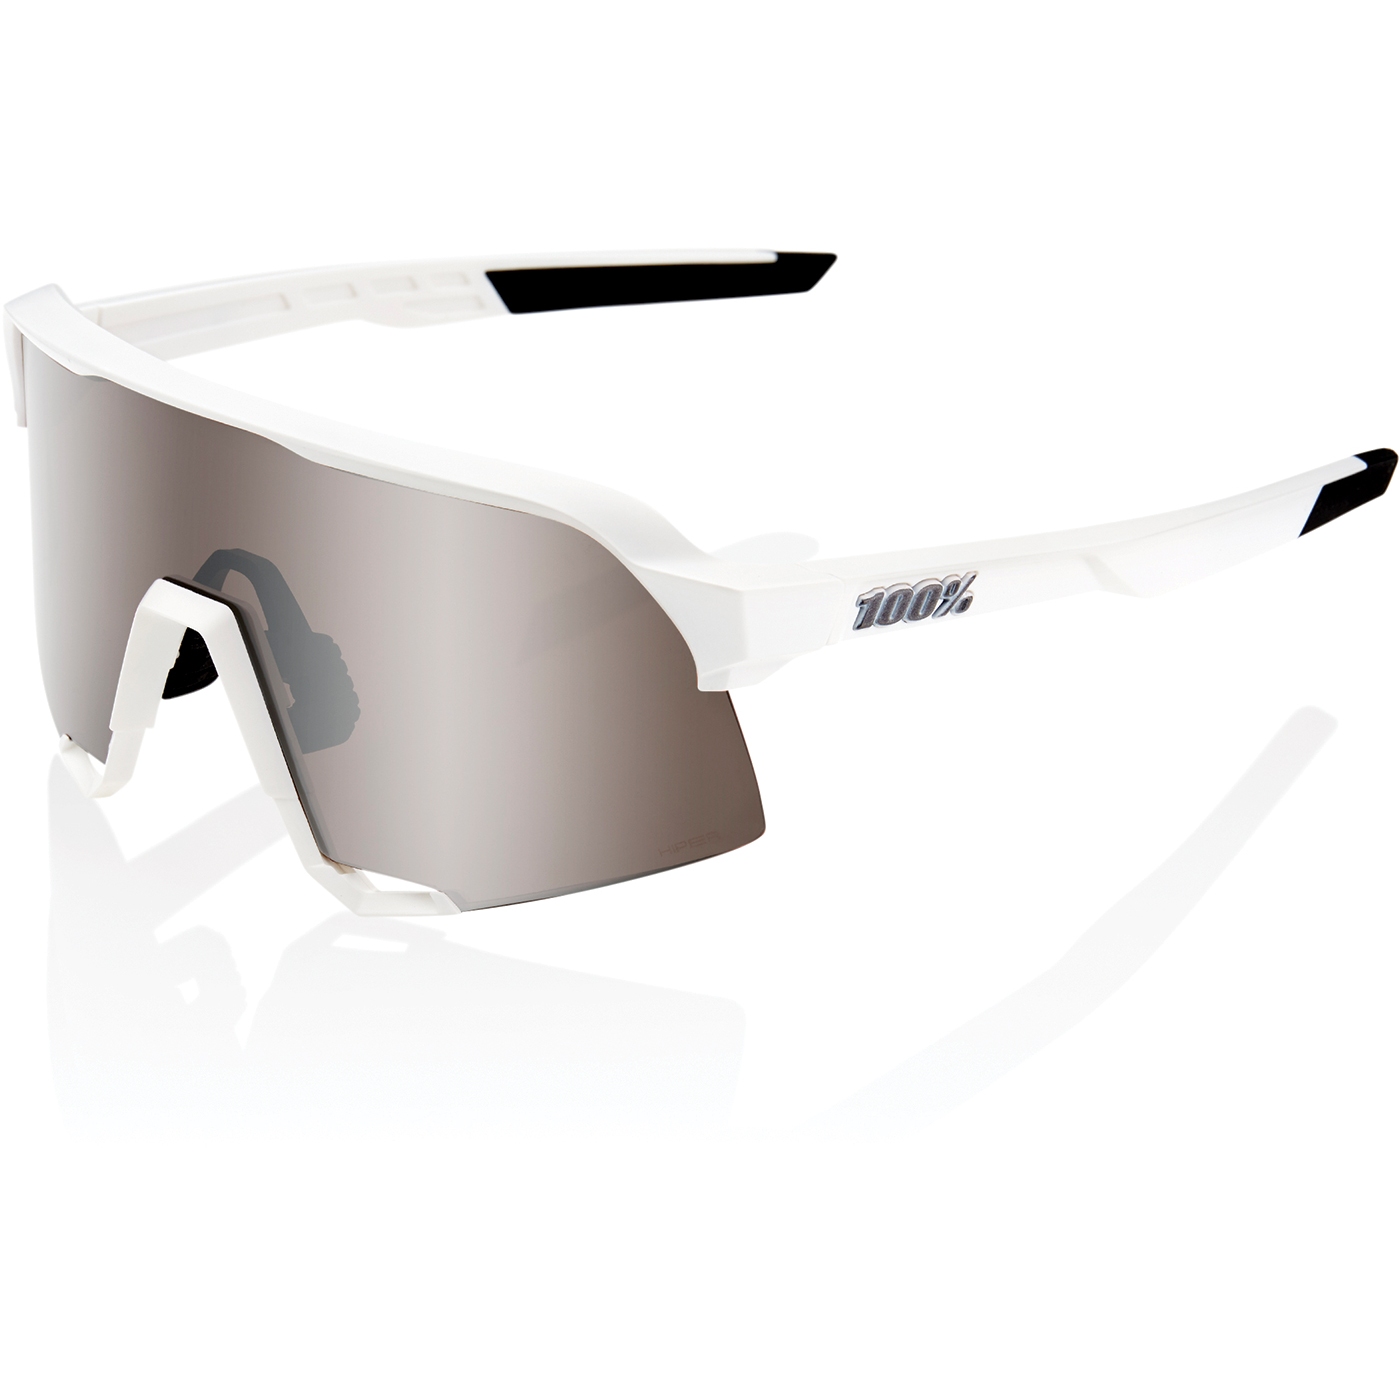 Produktbild von 100% S3 Brille - HiPER Mirror Lens - Matte White HiPER Silver / Silver + Clear